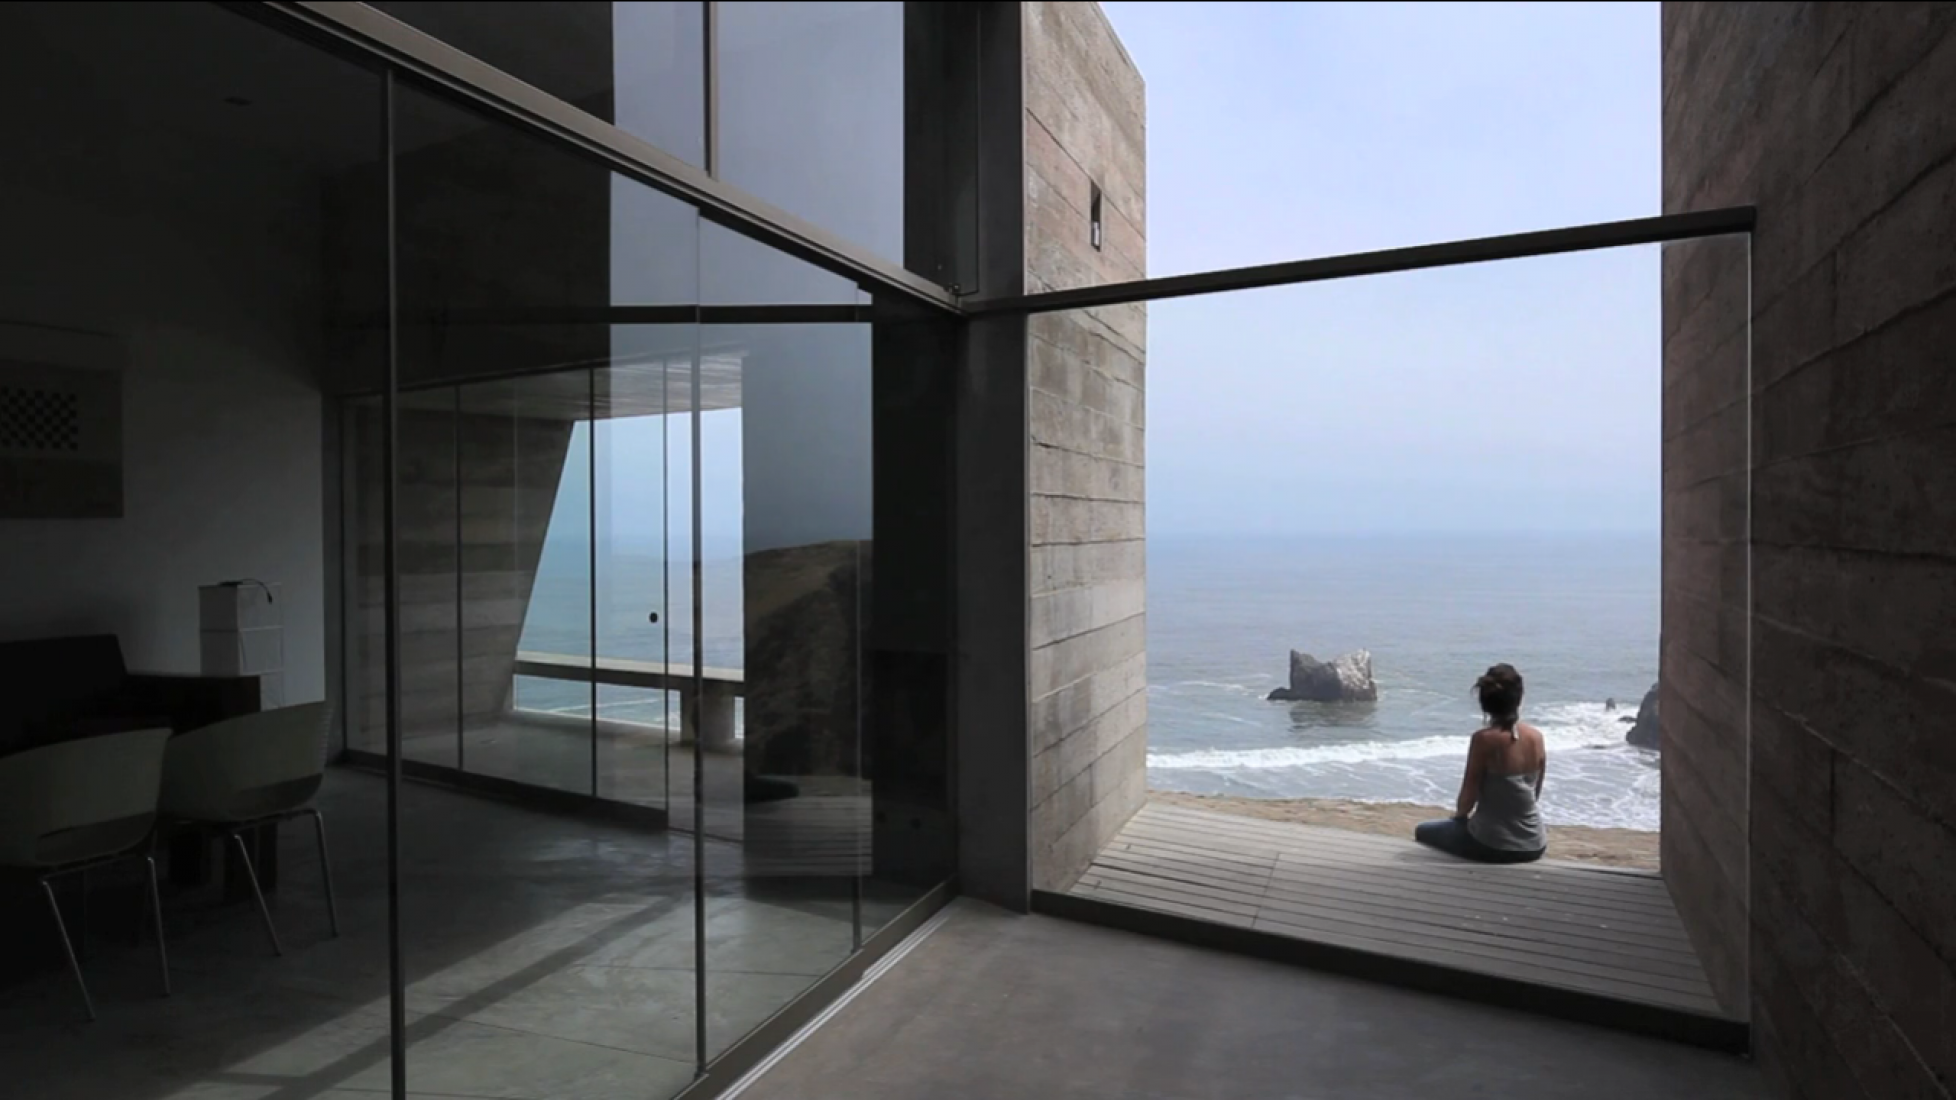 Trabajo de arquitectura en vídeo 2010-2014, Cristobal Palma. 